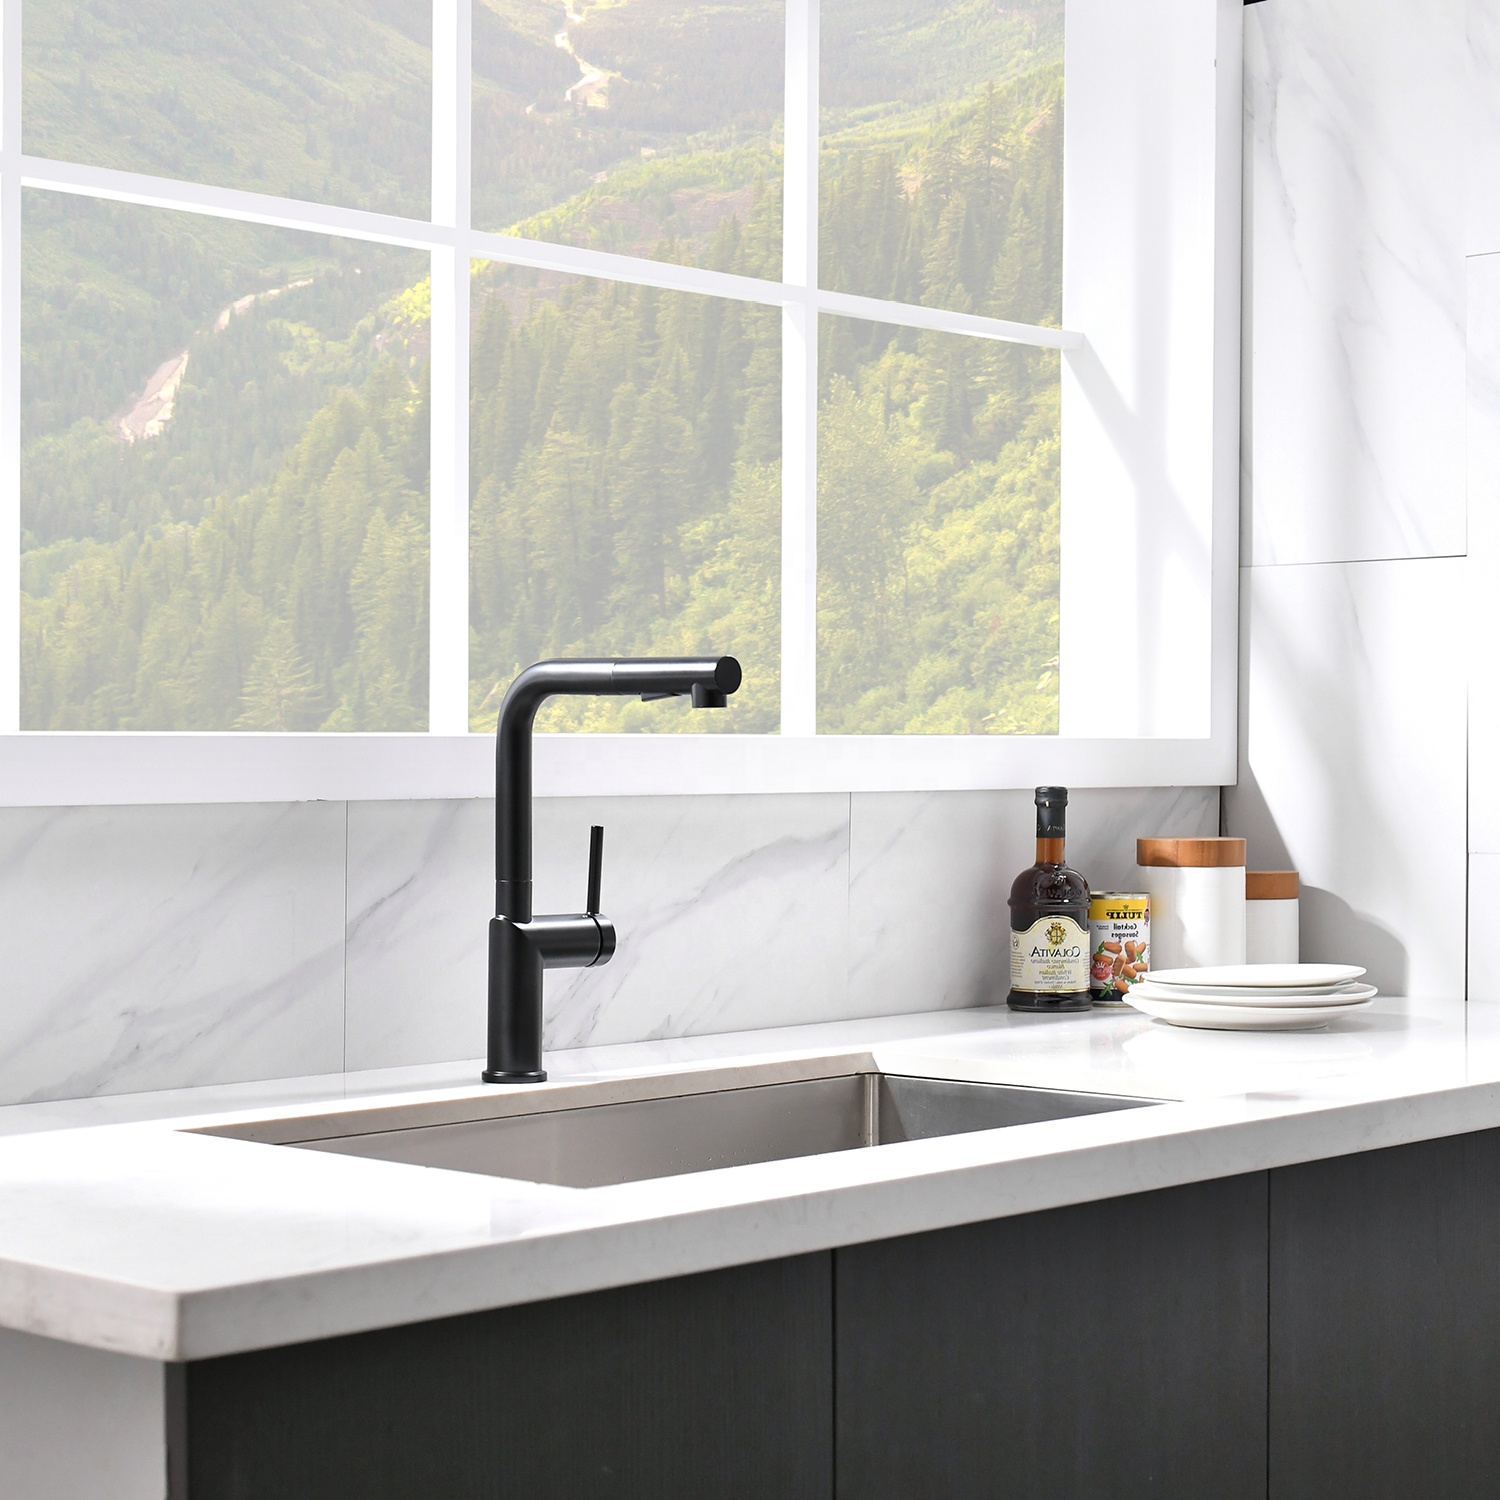 Robinet contemporain évier de cuisine robinets d'eau robinet nouveau Design moderne robinet de cuisine à pulvérisation extractible